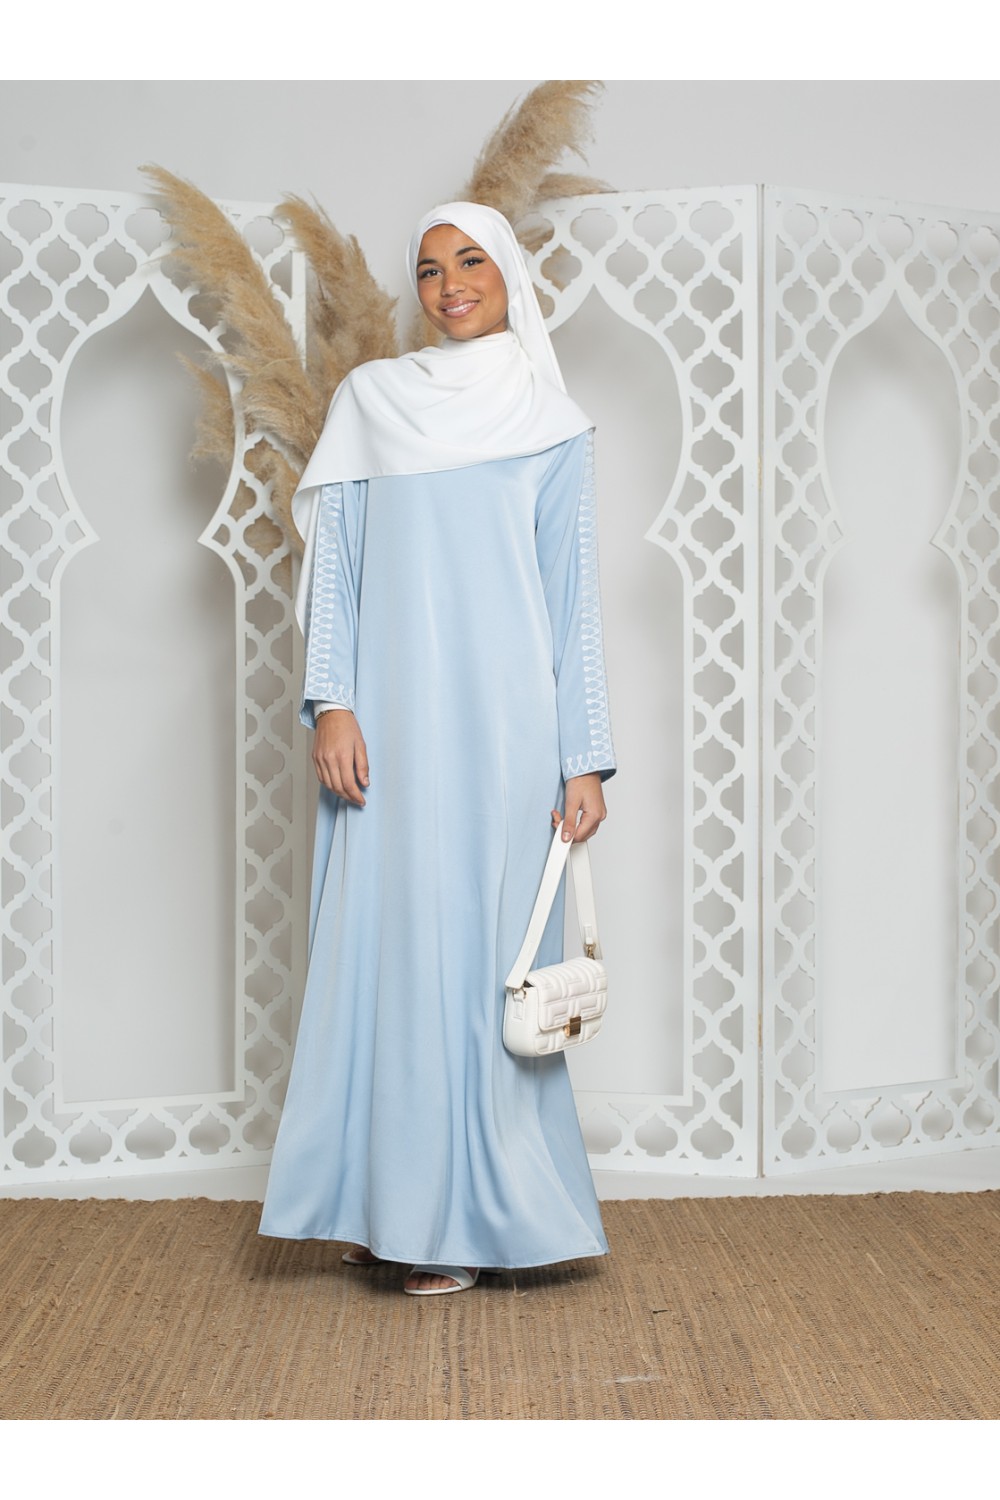 Robe longue satiné bleu avec broderie. Boutique hijab classe pour vos occasions.